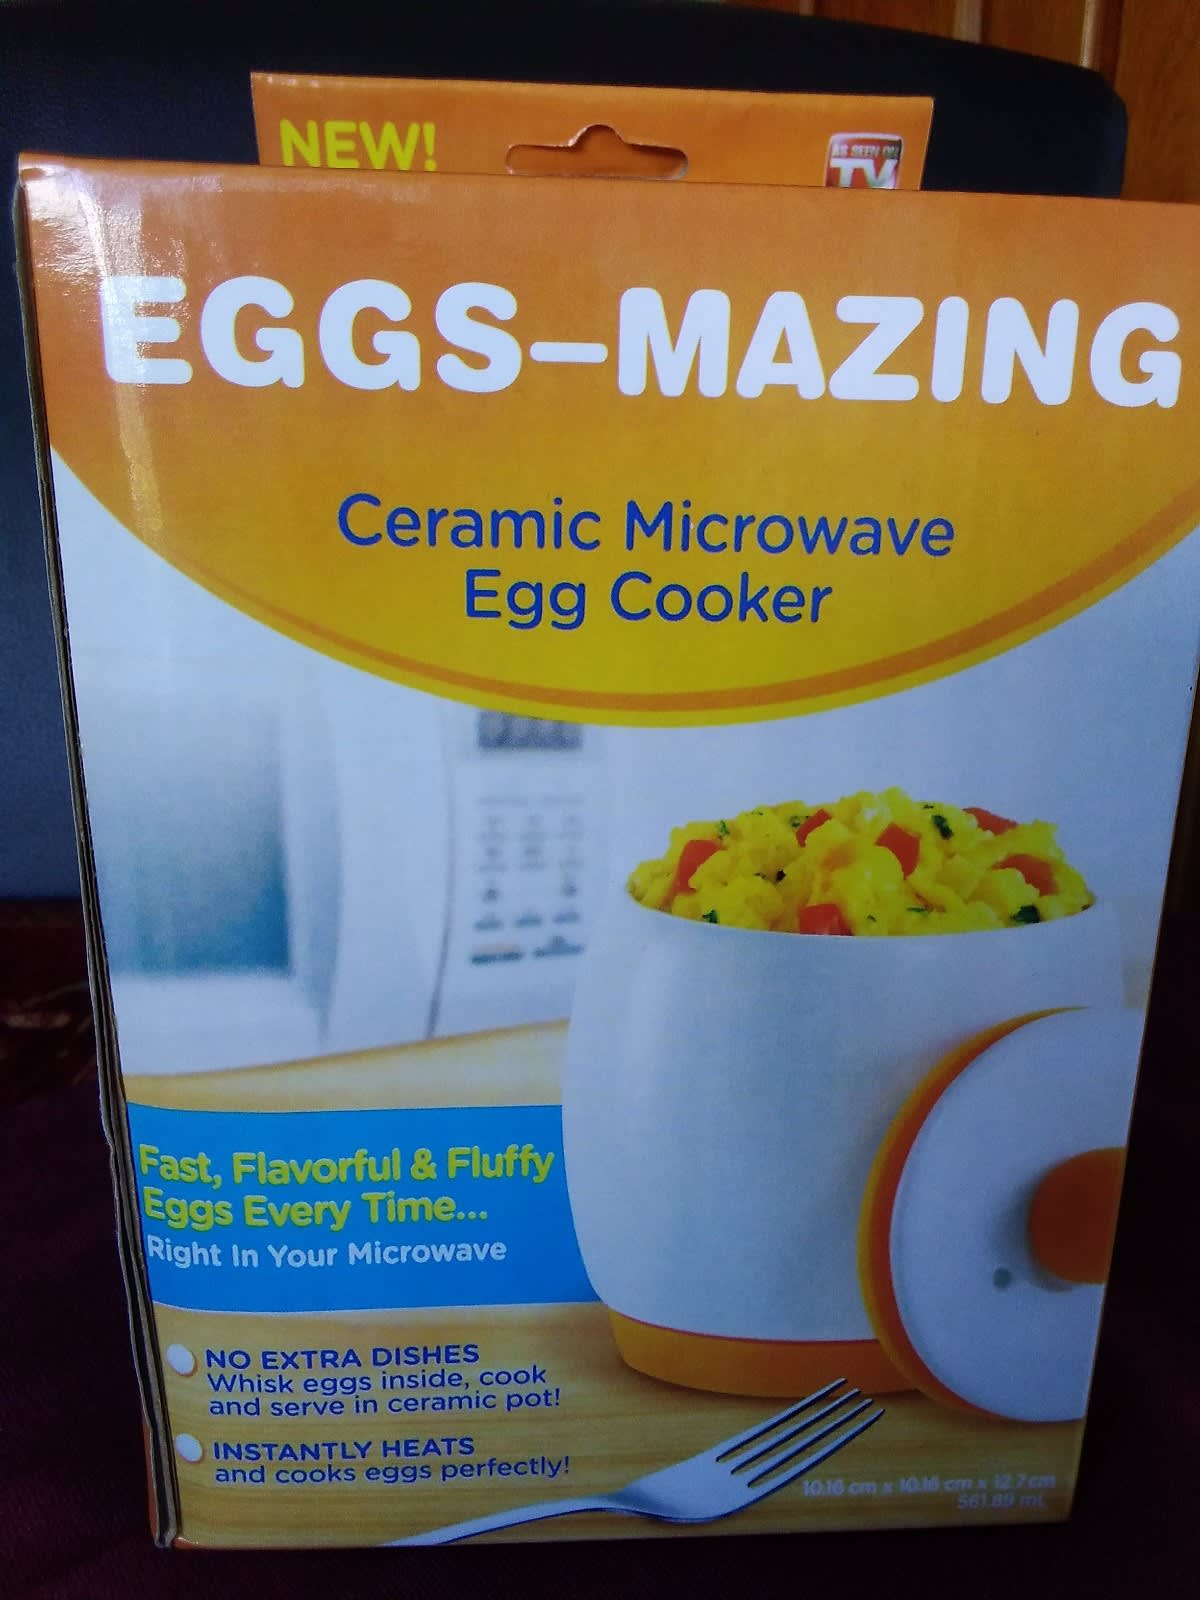 NEW Egg-Tastic Microwave Egg Cooker & Poacher For Fast & Fluffy Eggs 